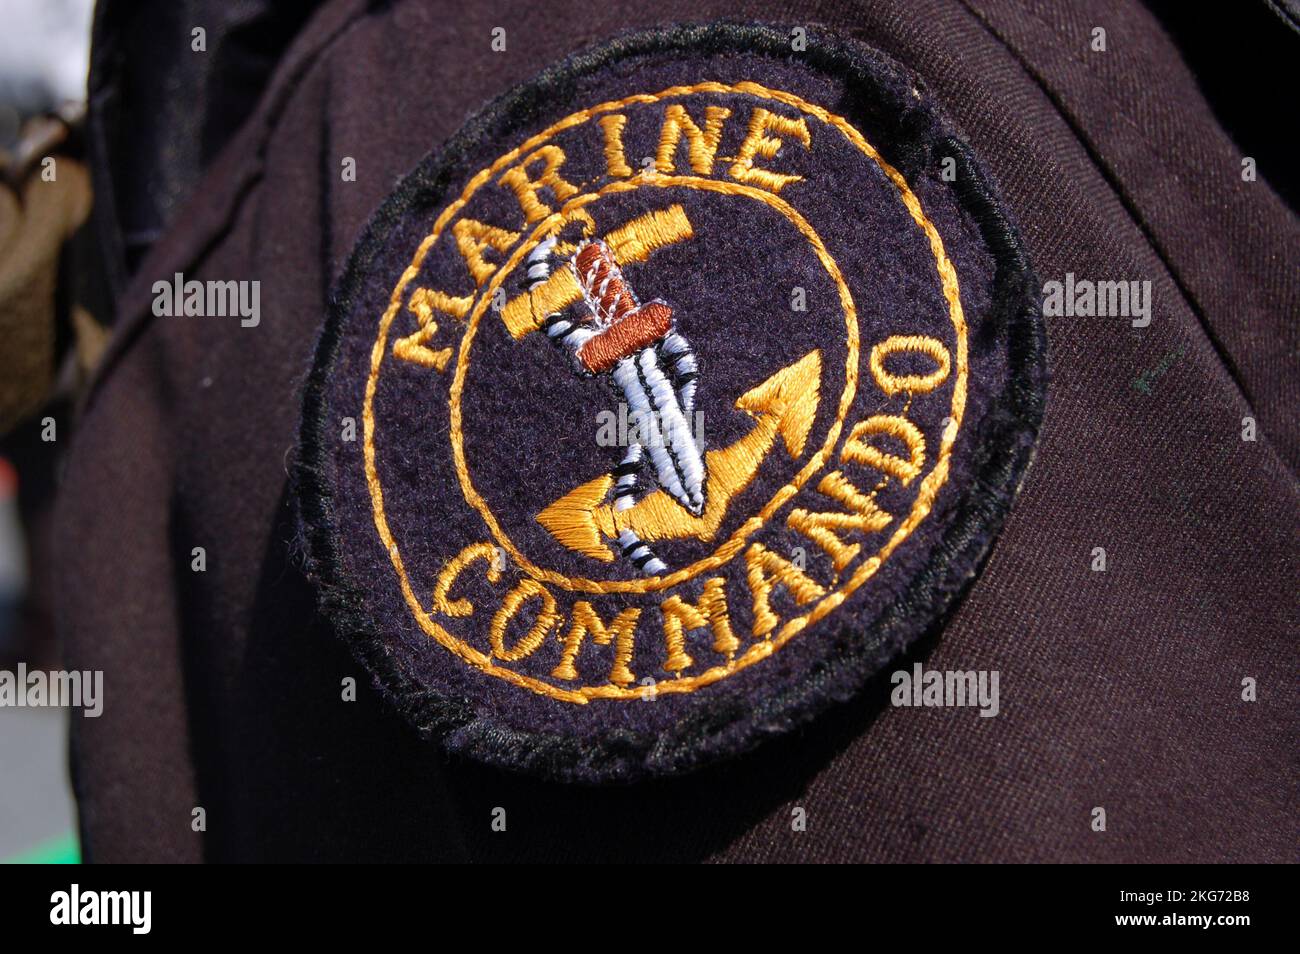 Präfektur Kanagawa, Japan - 14. April 2007: Patch der Spezialeinheit MARCOS (Marine Commandos) der indischen Marine. Stockfoto